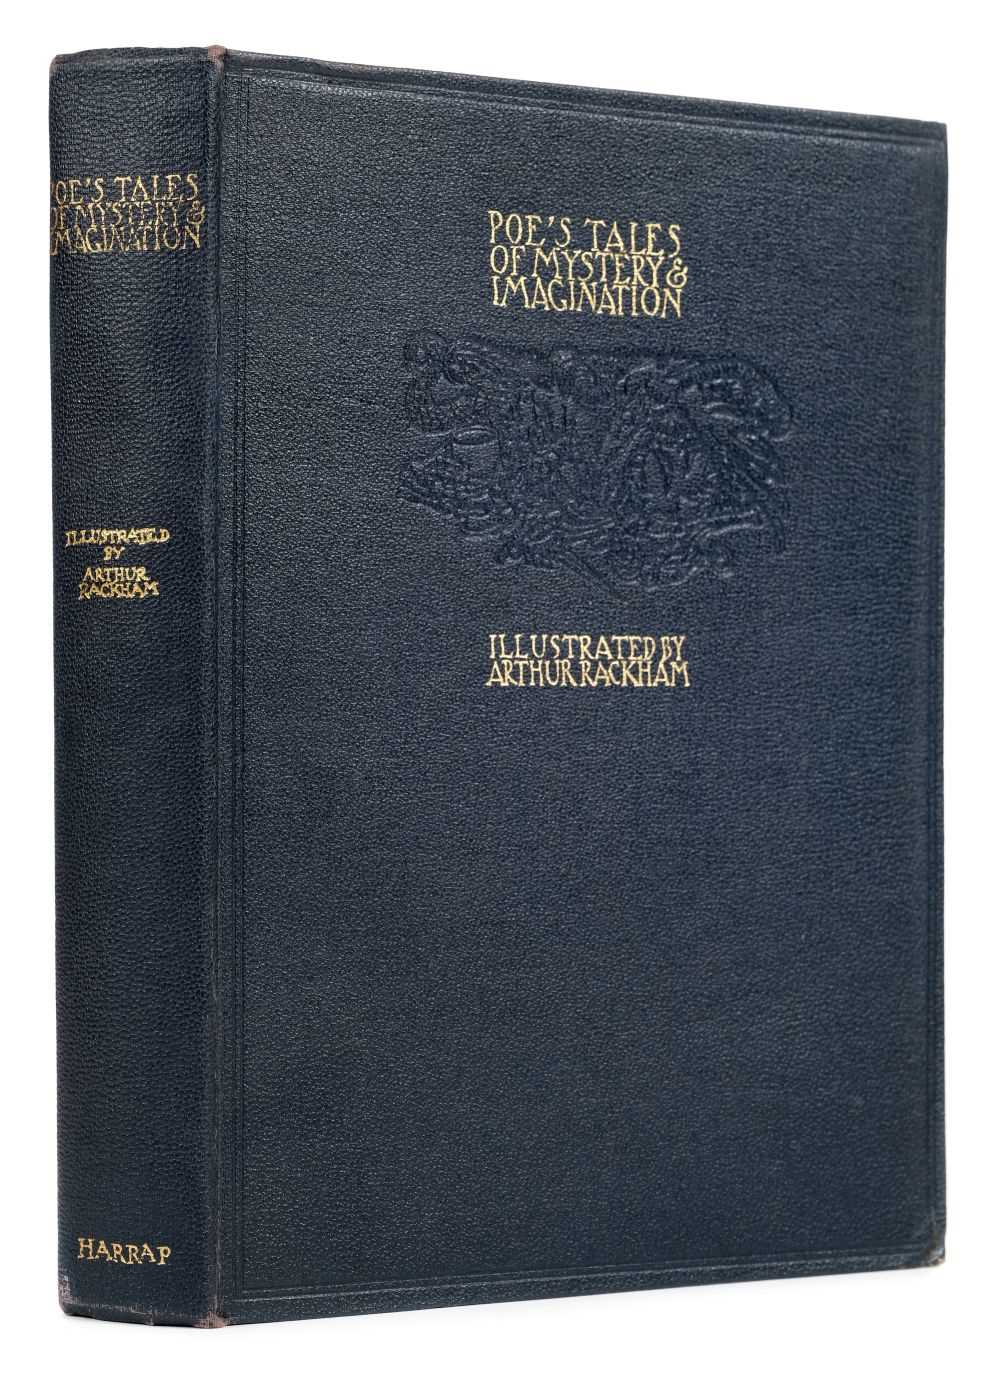 Lot 592 - Rackham (Arthur, illustrator). Tales of Mystery & Imagination, by Edgar Allan Poe, 1935